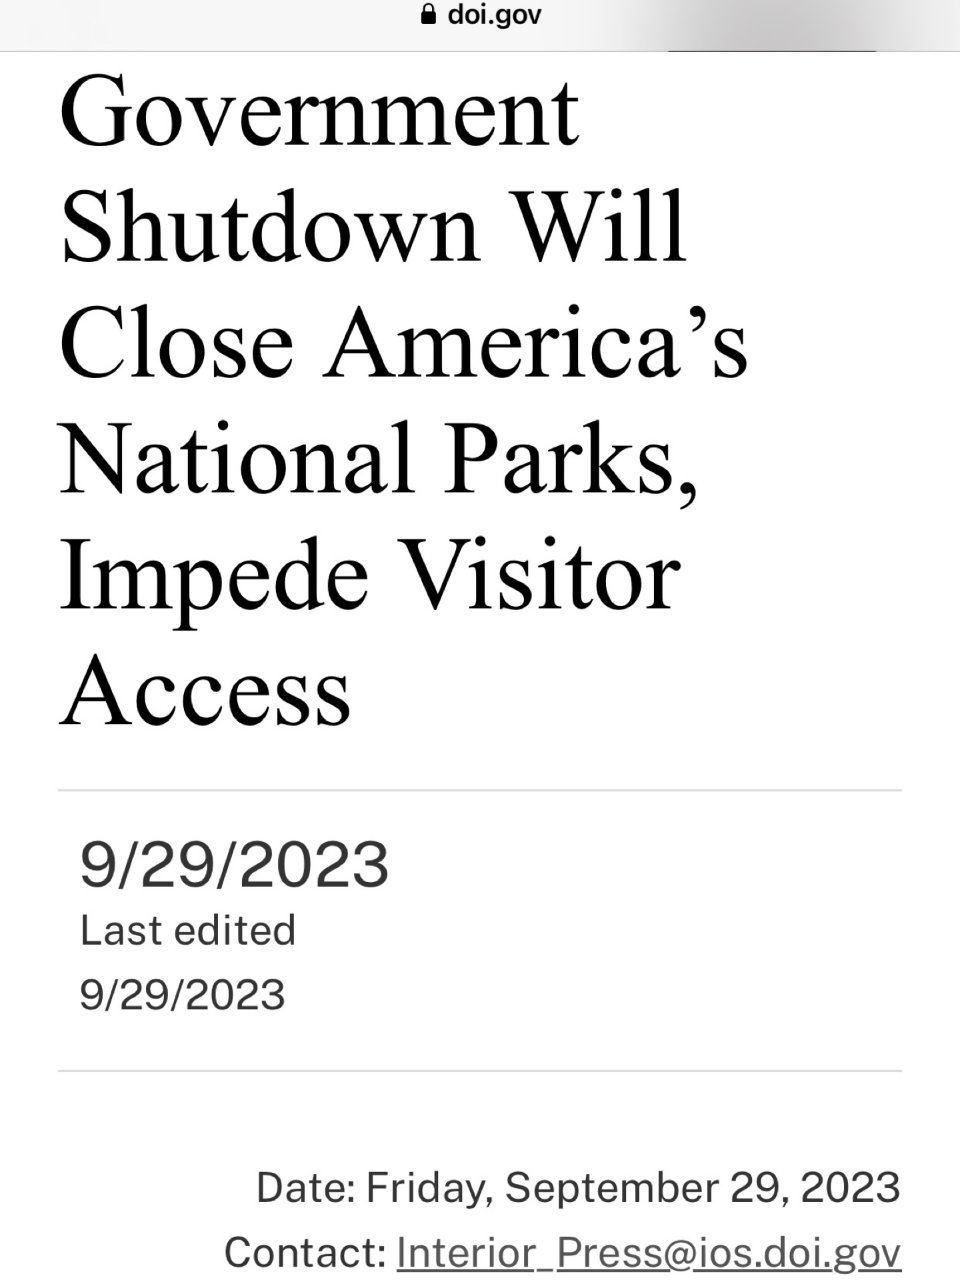 大部分美国国家公园将在10/2关闭...